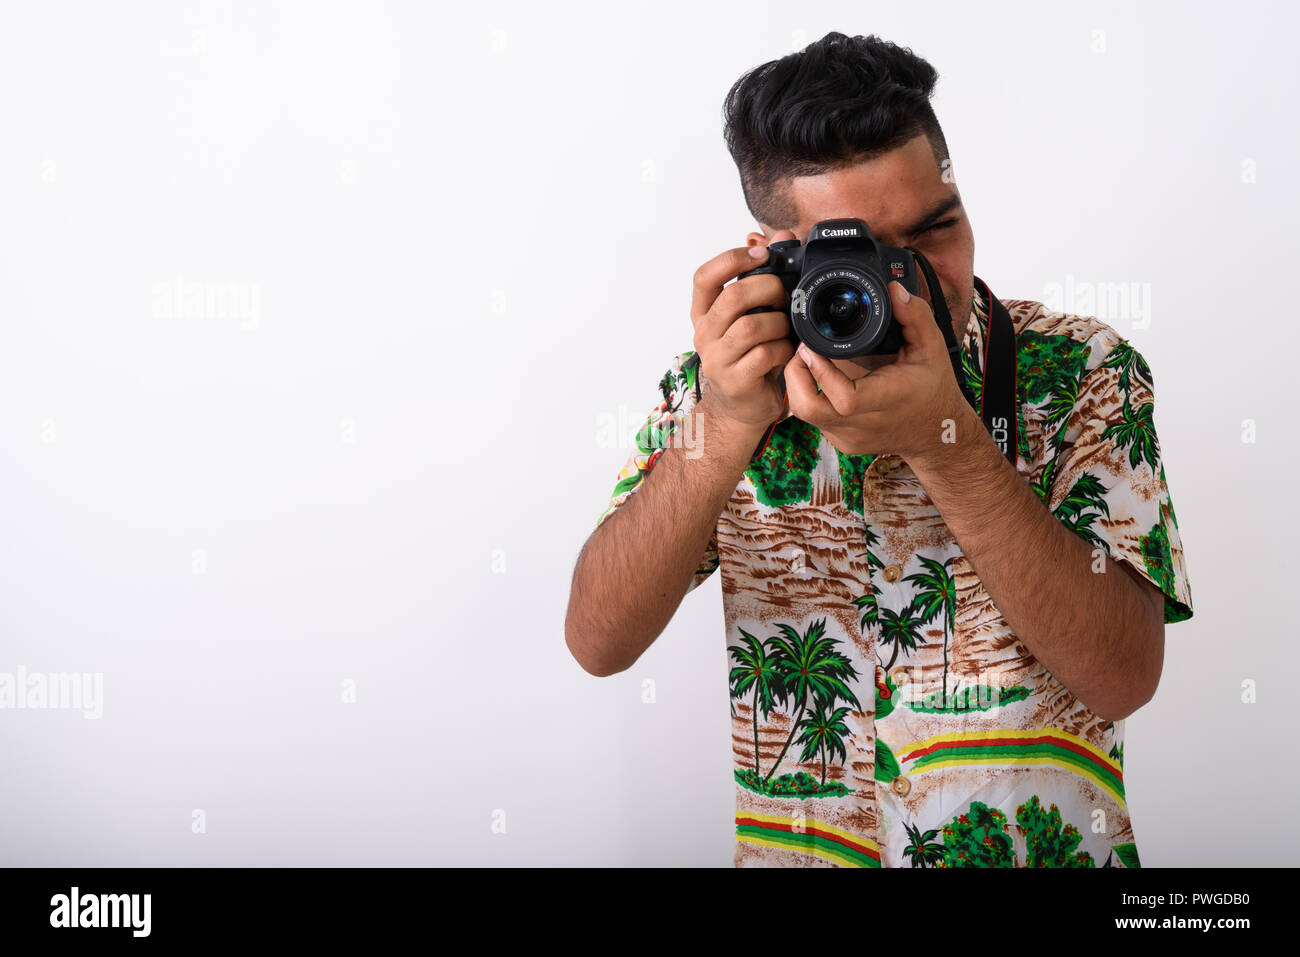 Young Indian tourist man wearing Hawaiian shirt against white ba Stock Photo